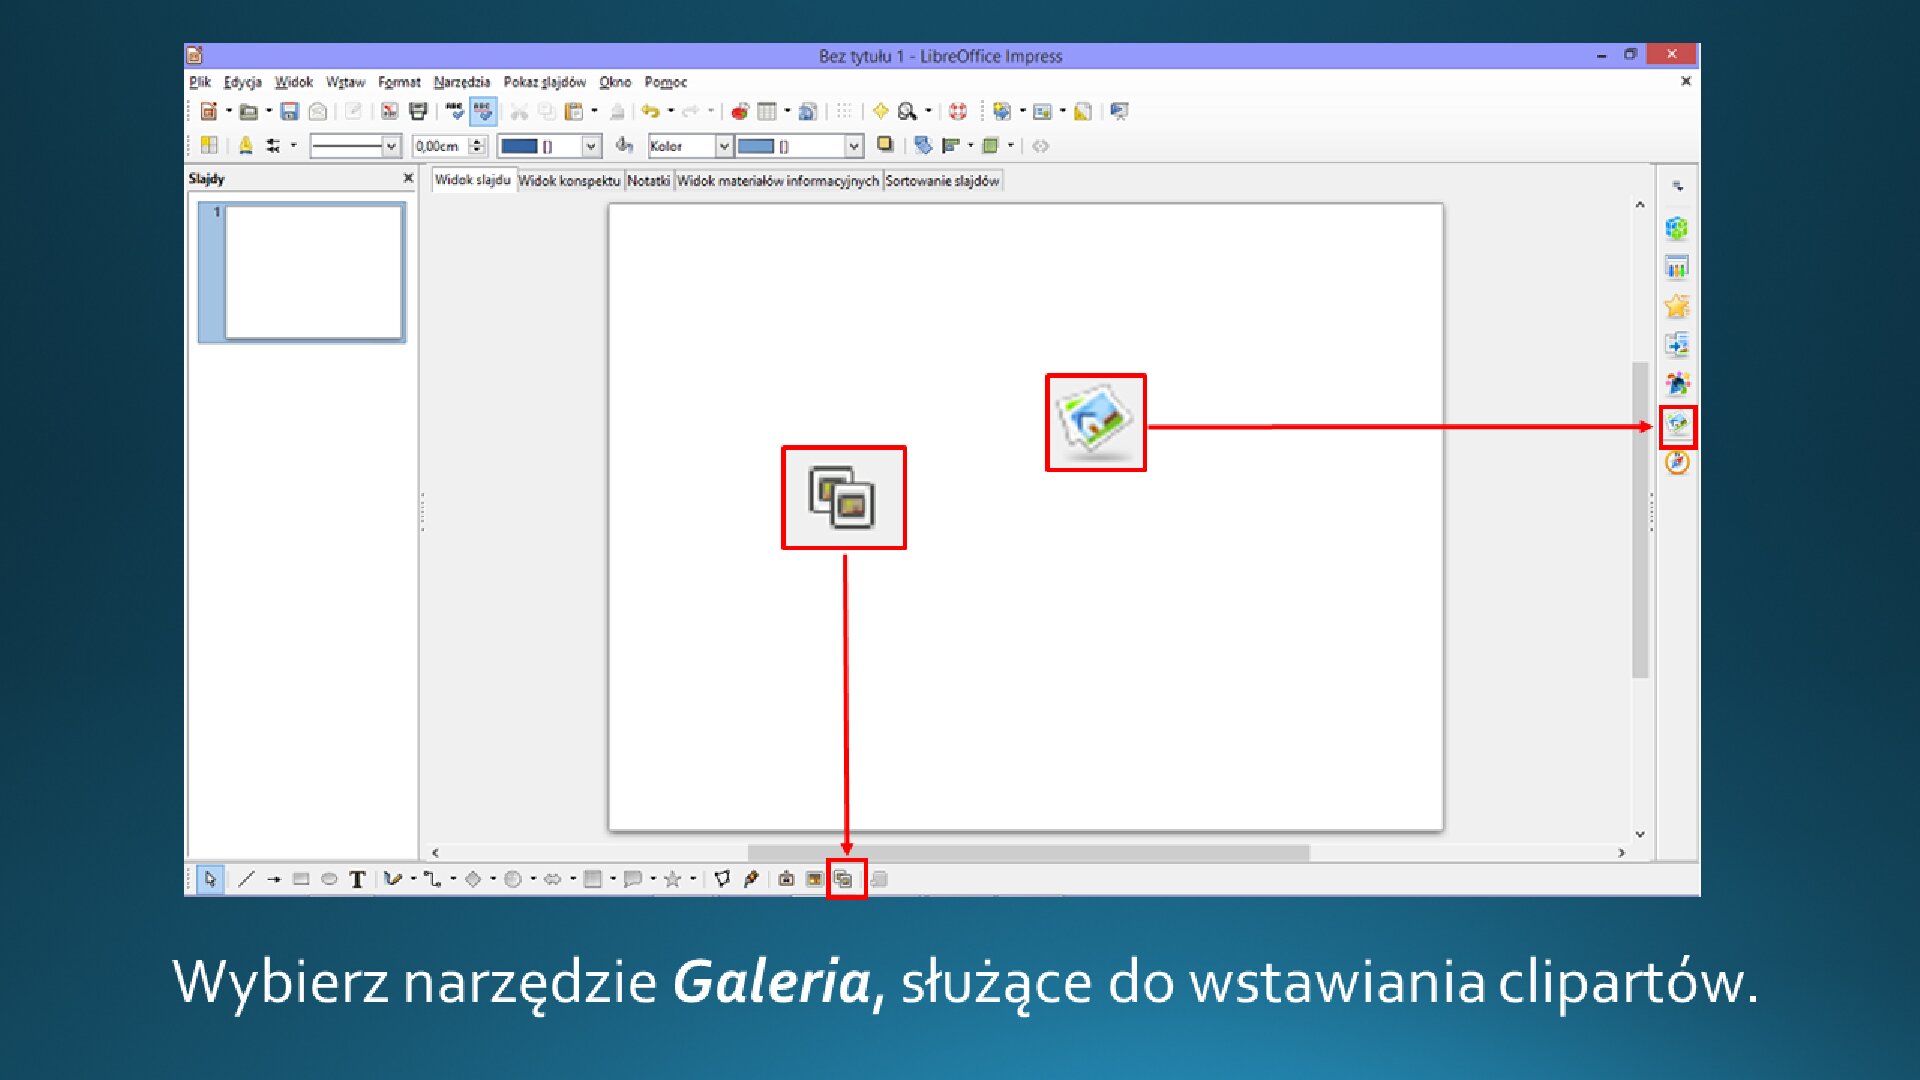 Slajd 1 galerii zrzutów slajdów: Wstawianie clipartu na slajd o pustym układzie w programie LibreOffice Impress